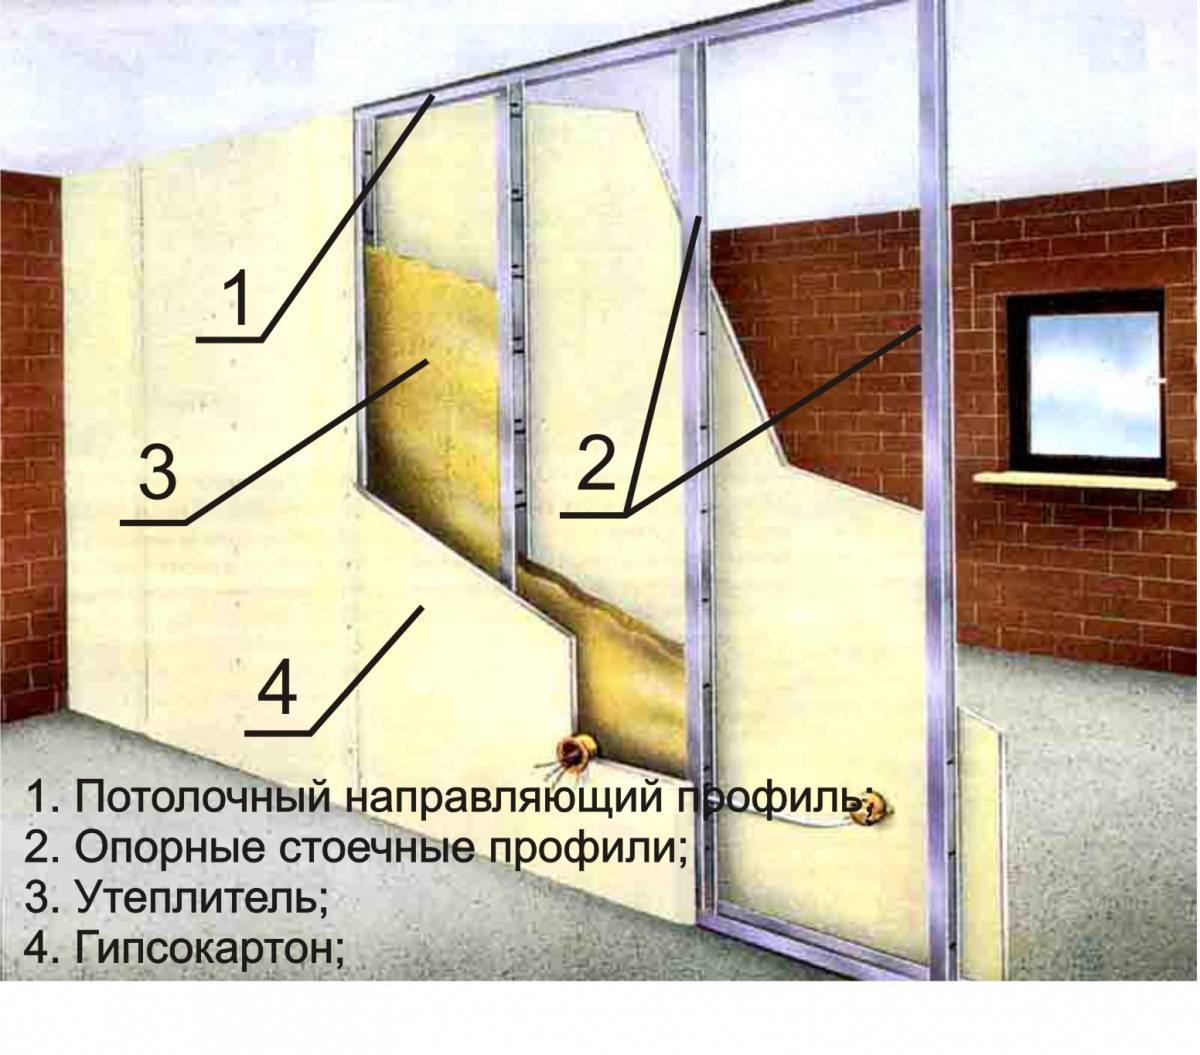 Утепление стен изнутри в угловой квартире